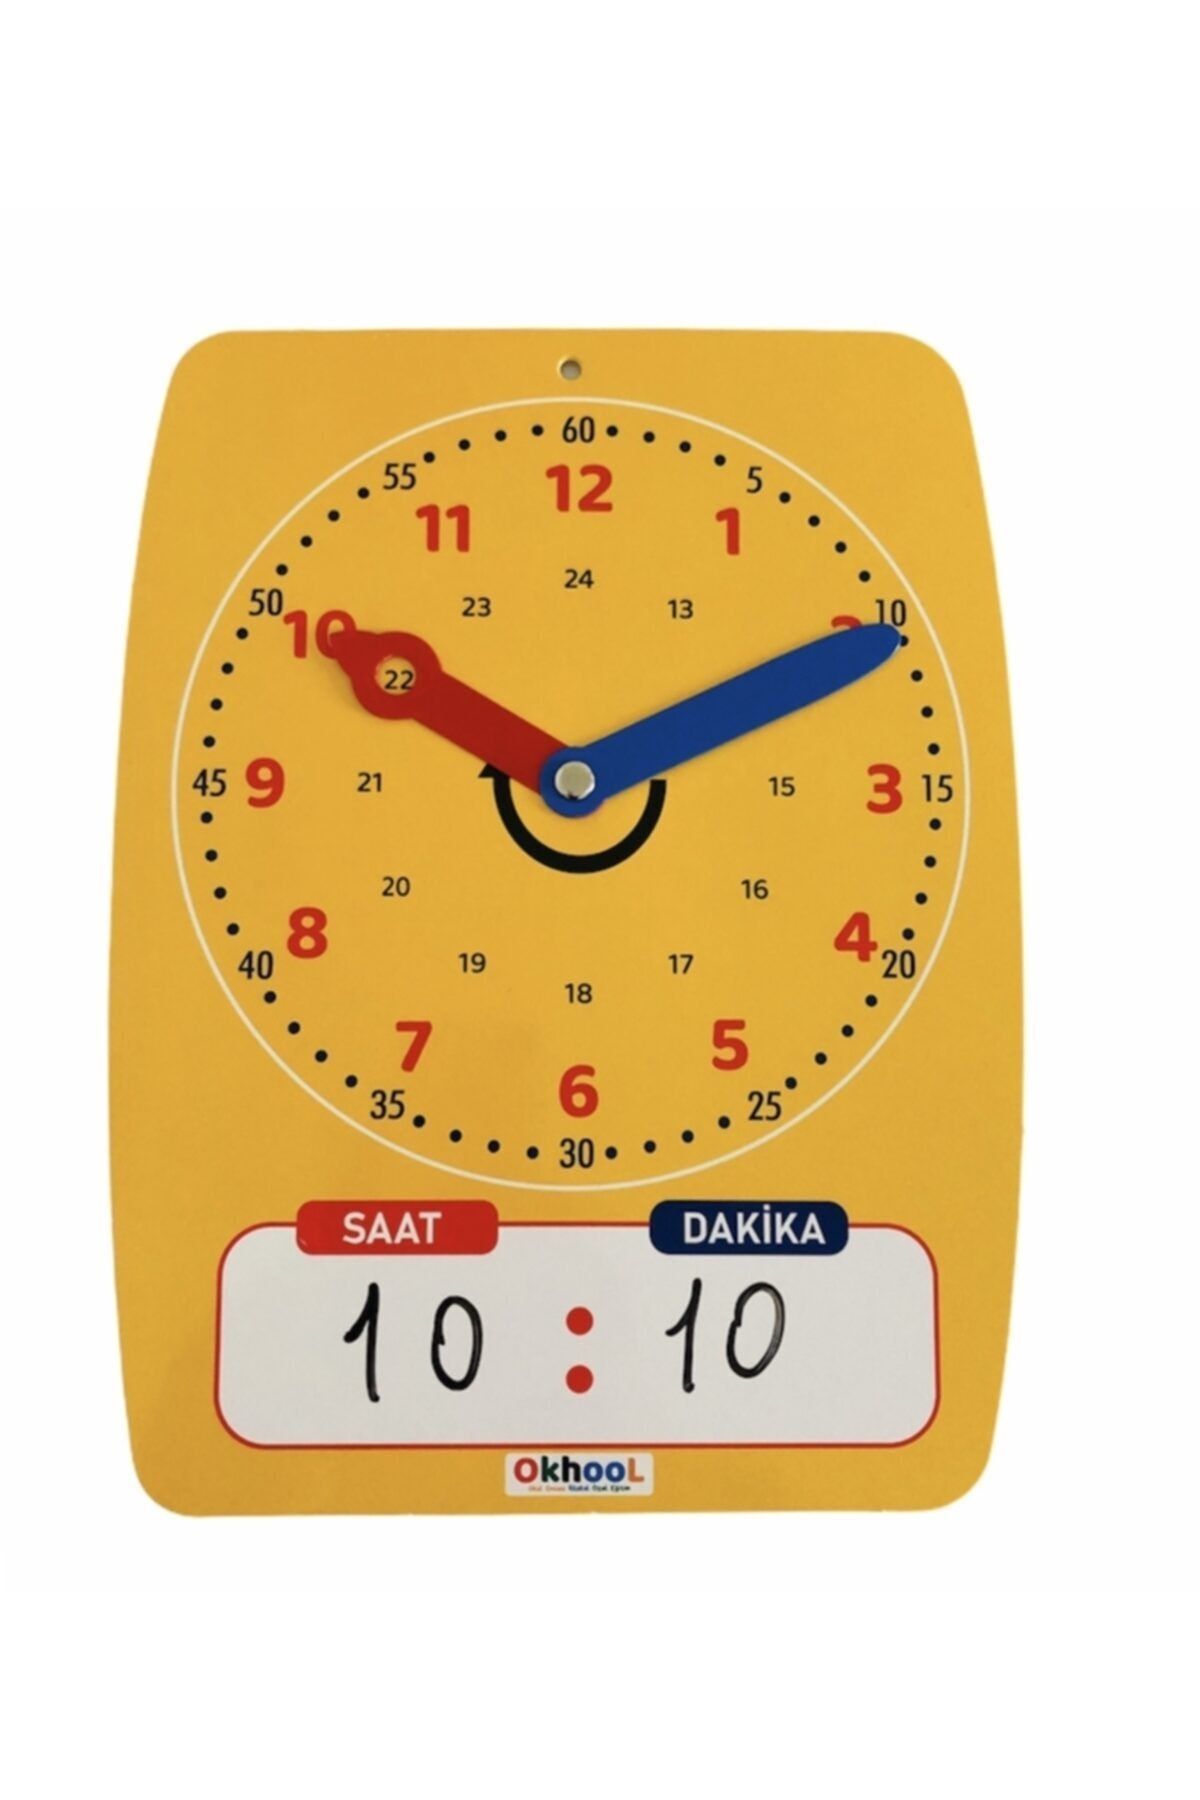 Okhool Saat Öğrenme Materyali Yaz Sil - Mıknatıslı